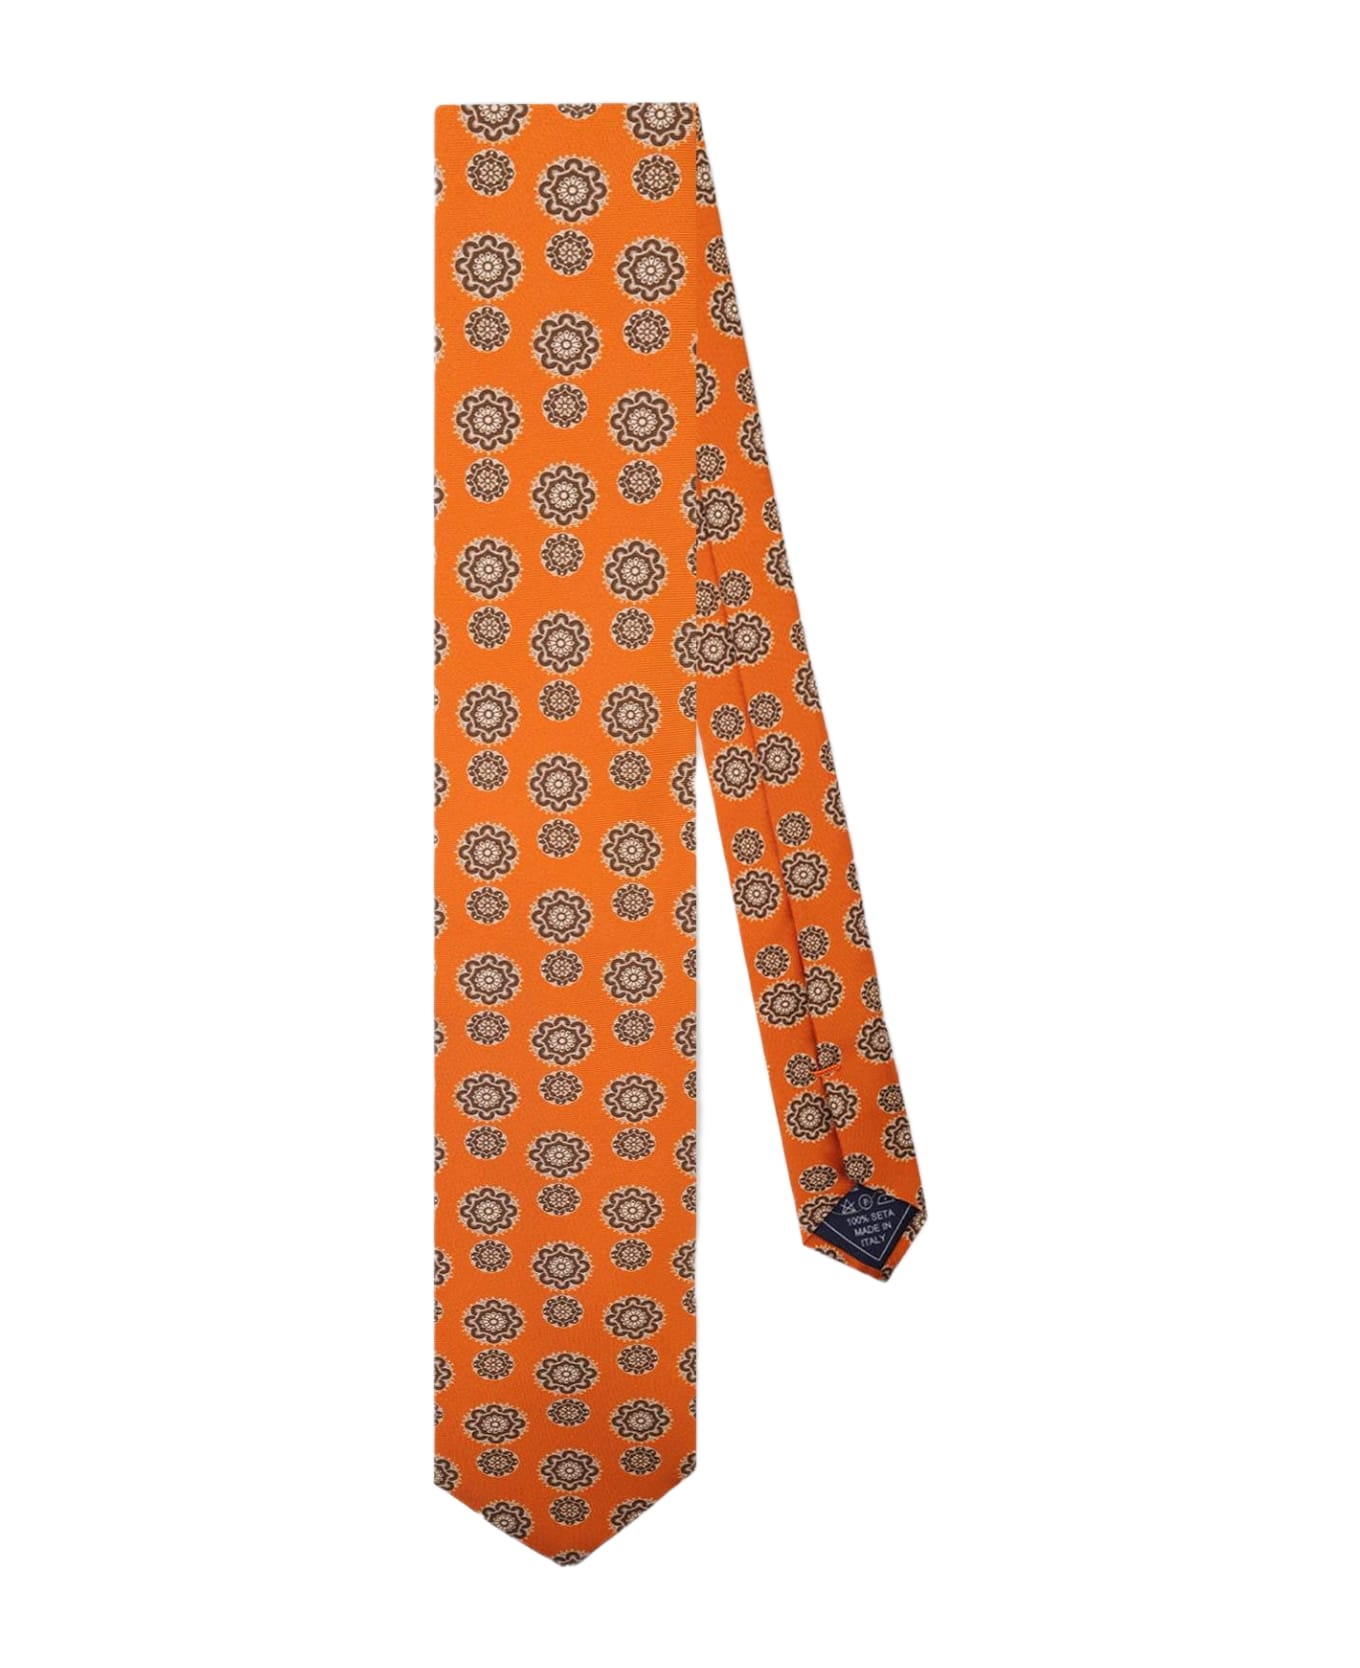 Larusmiani Tie 'arabesque' Tie - Orange